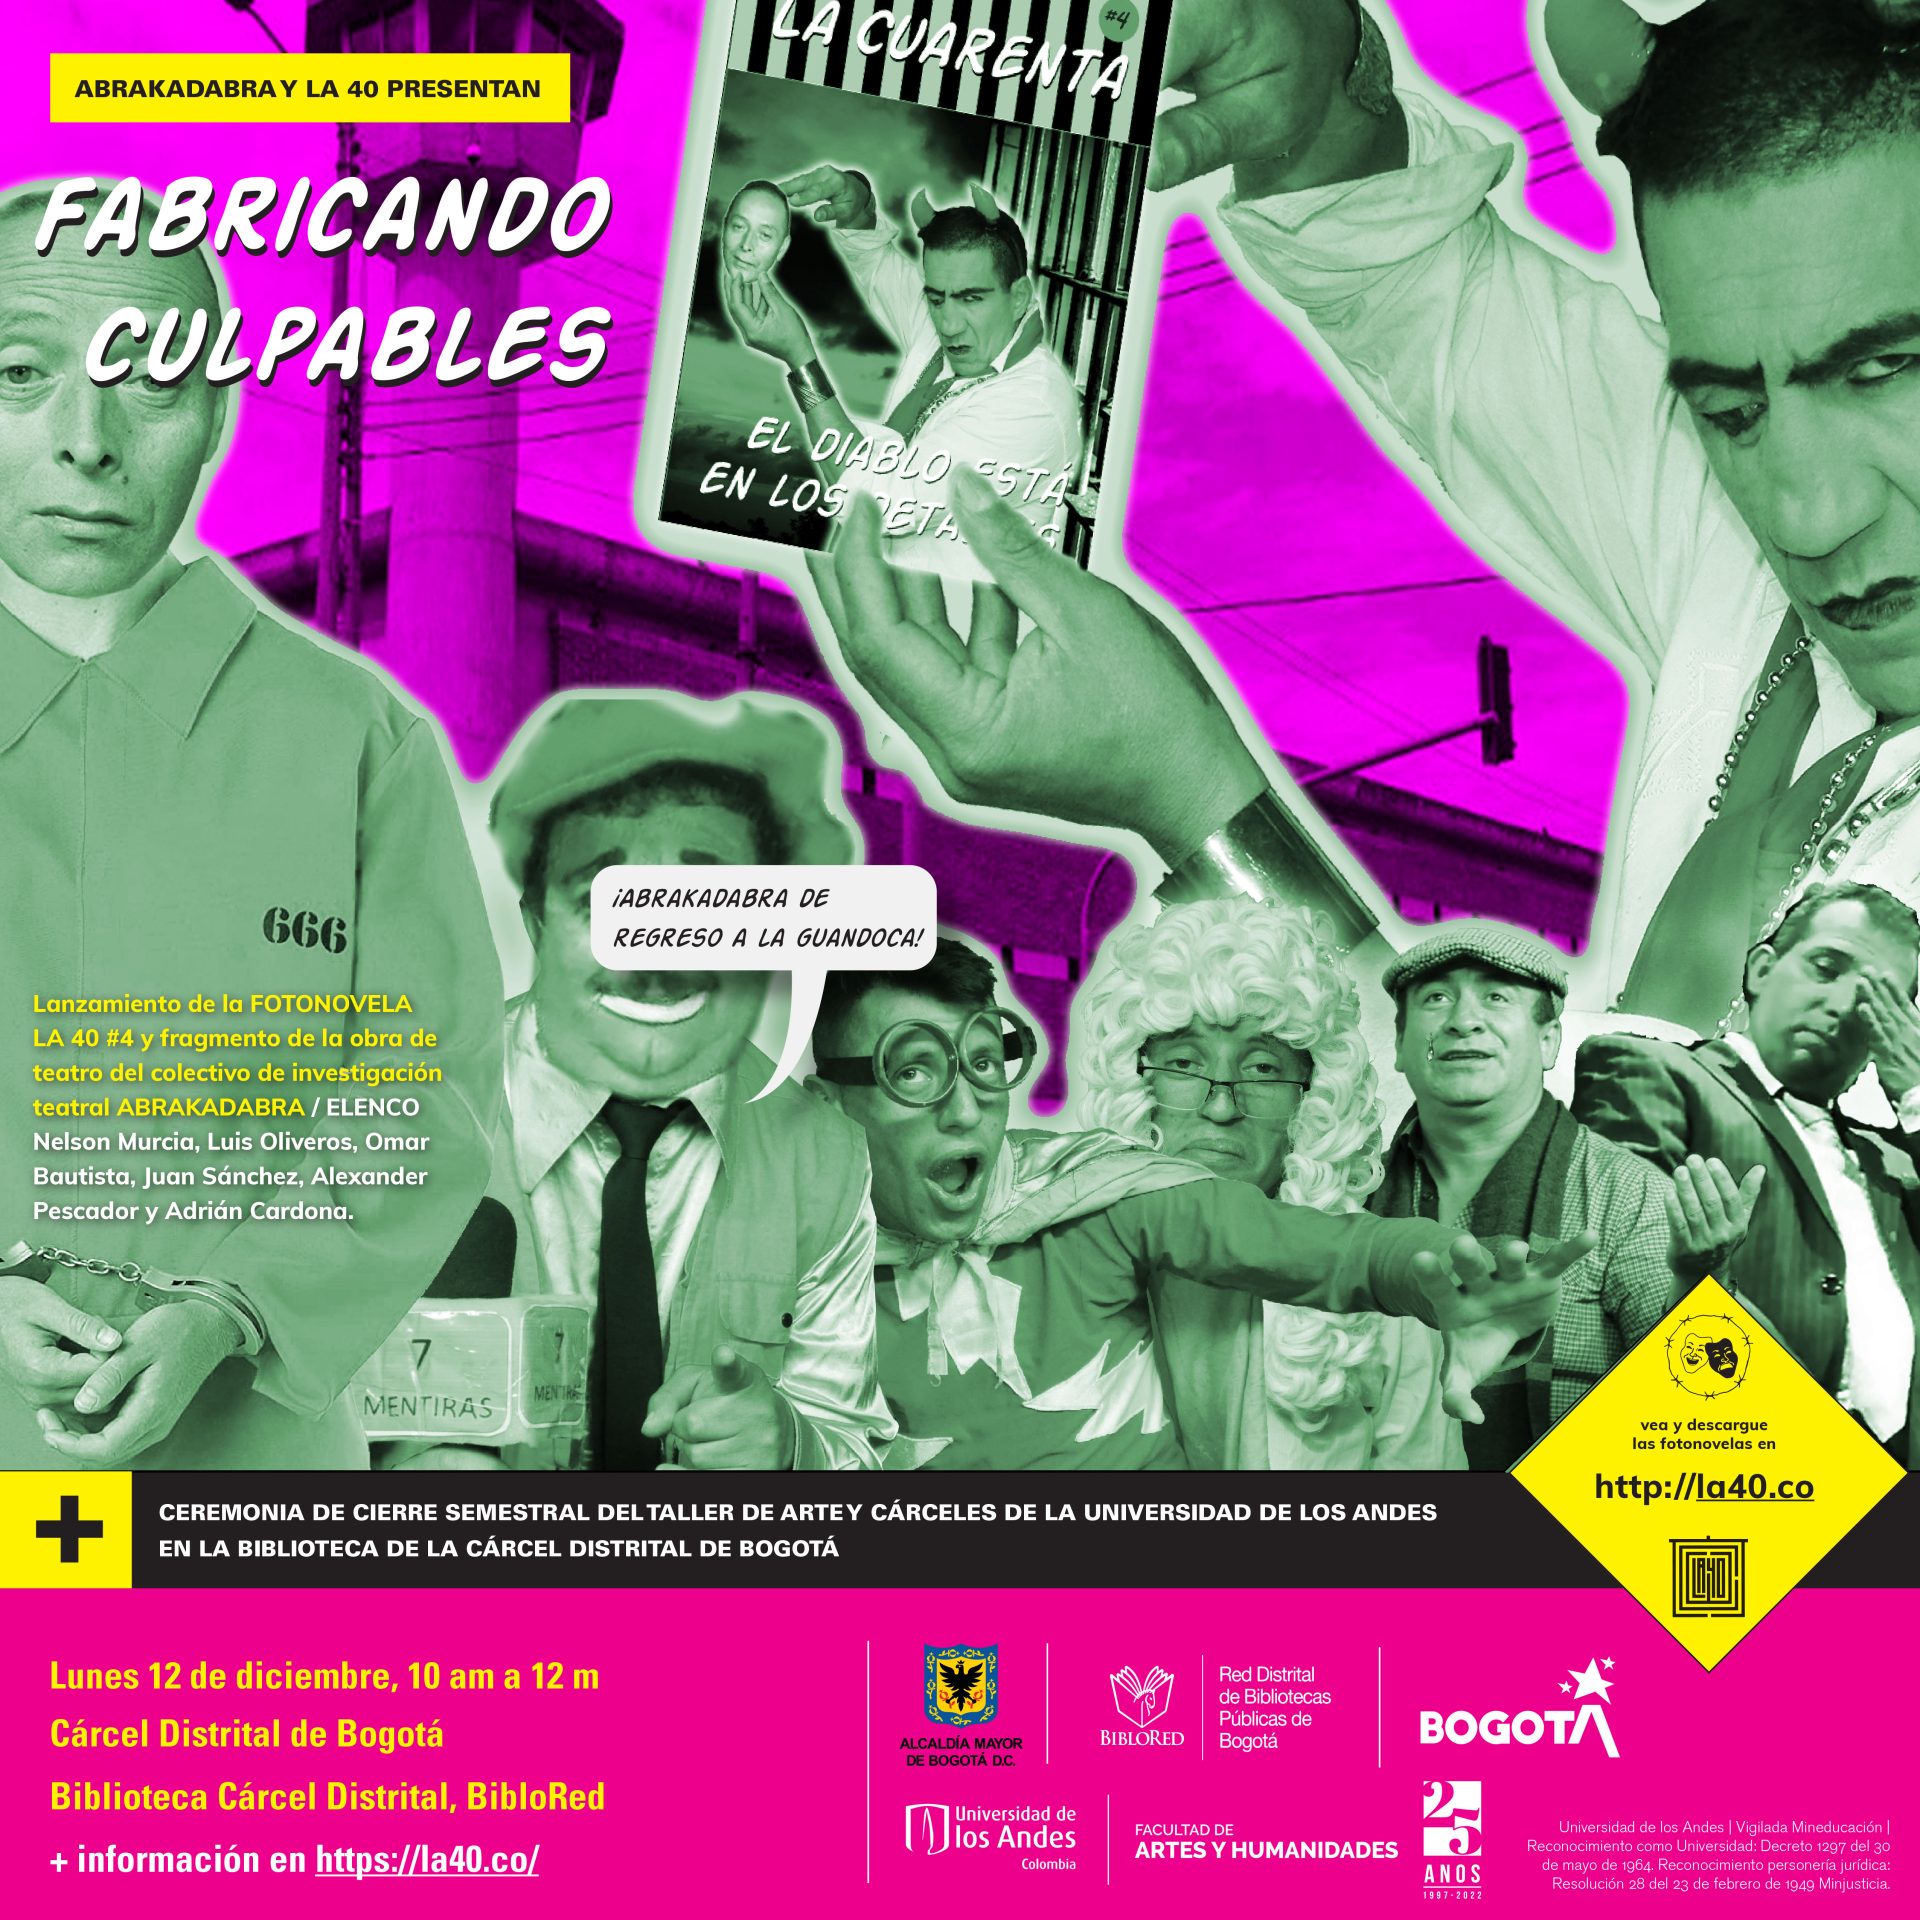 Abrakadabra y La 40 de la Universidad de Los Andes presentan en la Cárcel Distrital de Bogotá  el lanzamiento de la Fotonovela LA 40 #4: Fabricando Culpables